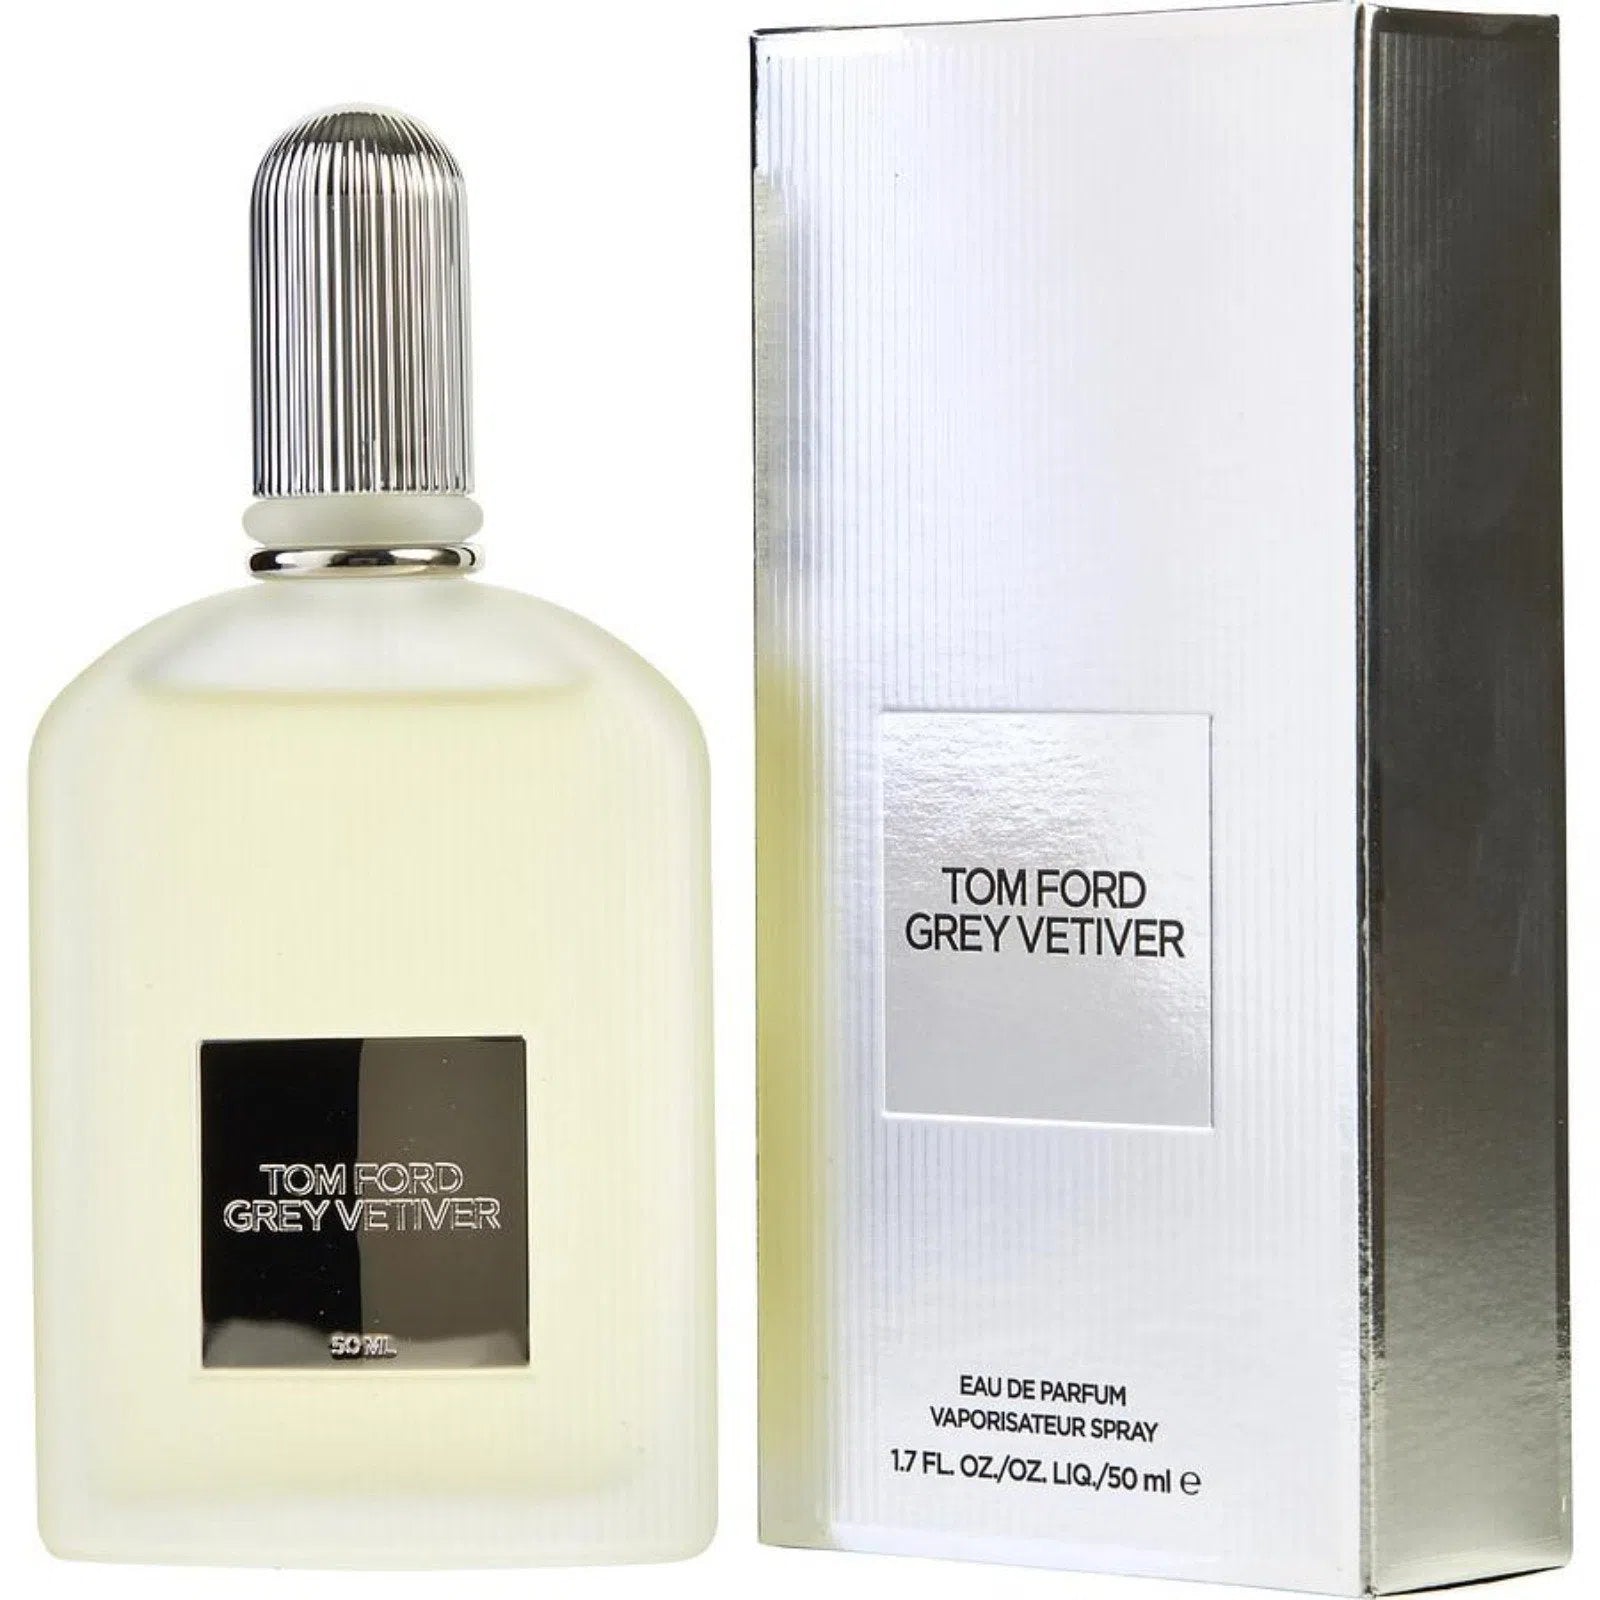 Perfume Tom Ford Grey Vetiver EDP (M) / 50 ml - 888066006743- Prive Perfumes Honduras